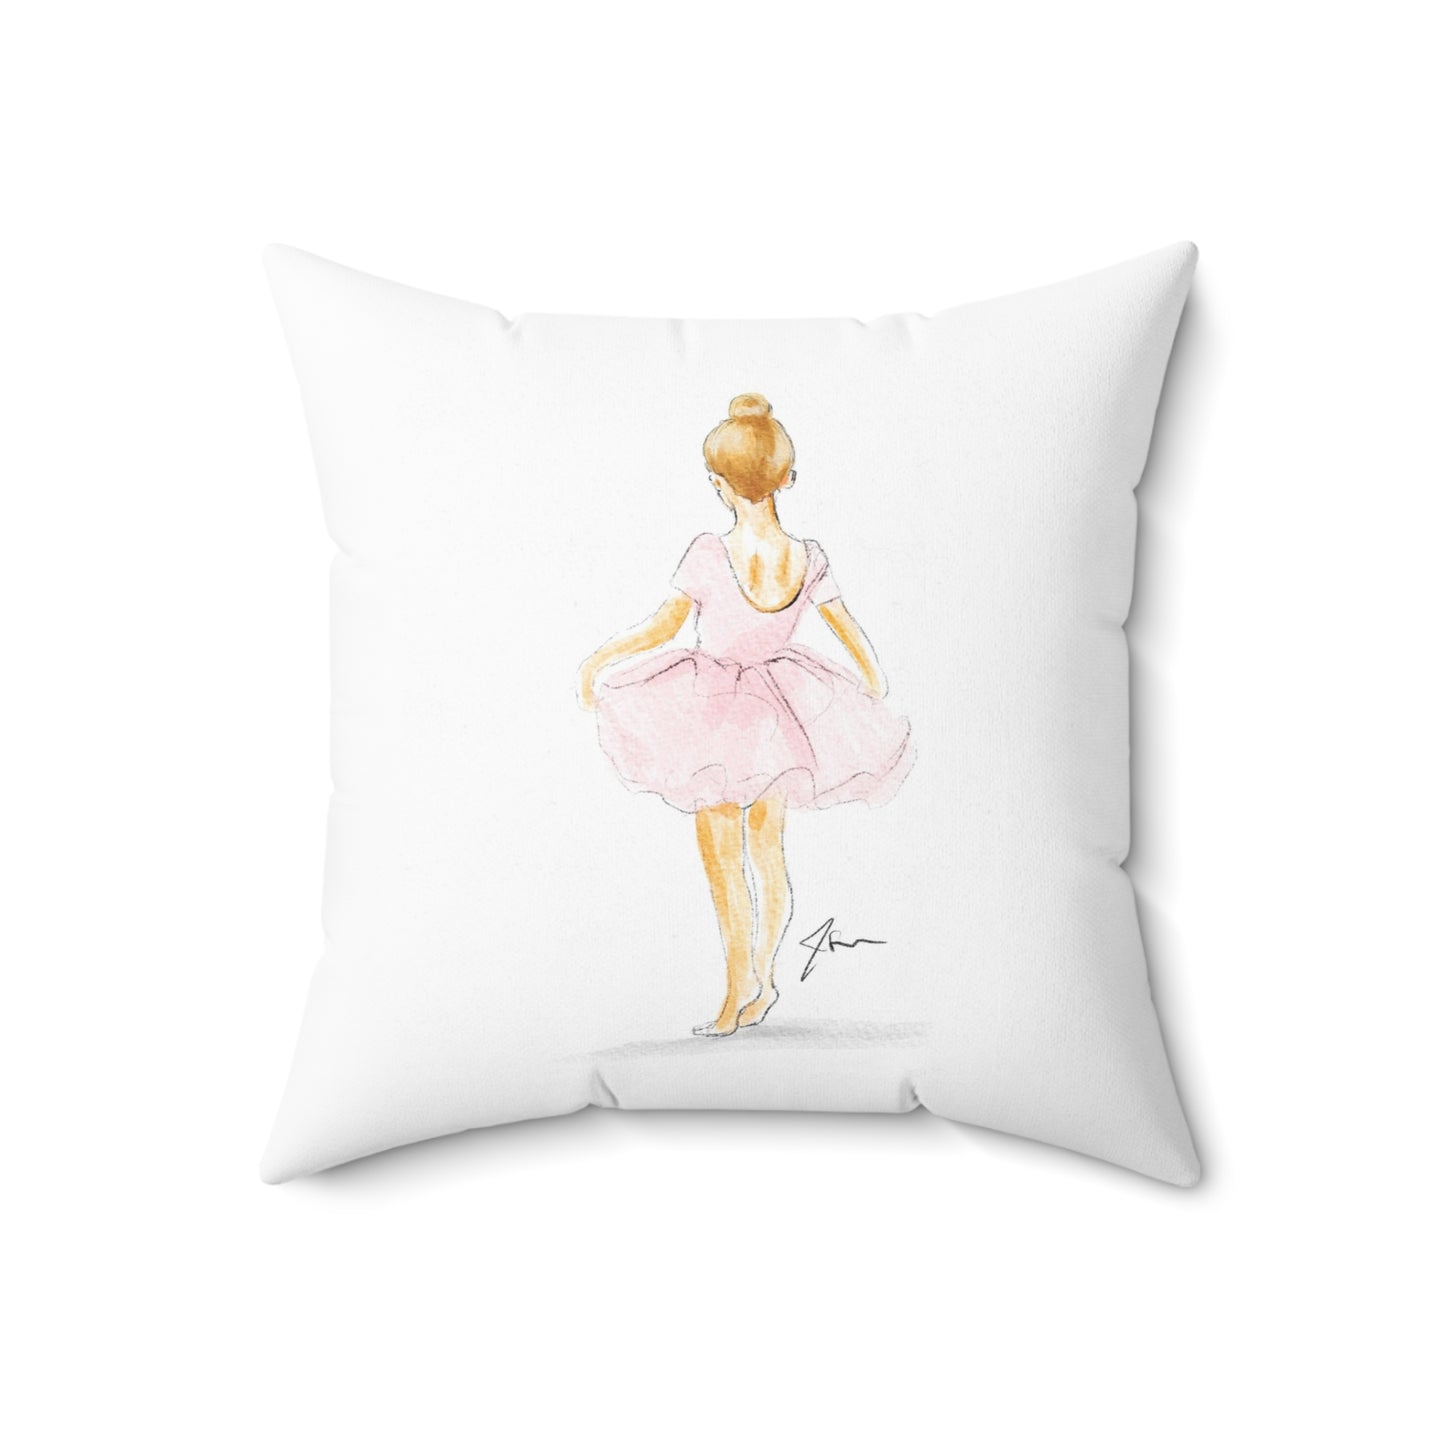 Little ballerina (Red) Pillow